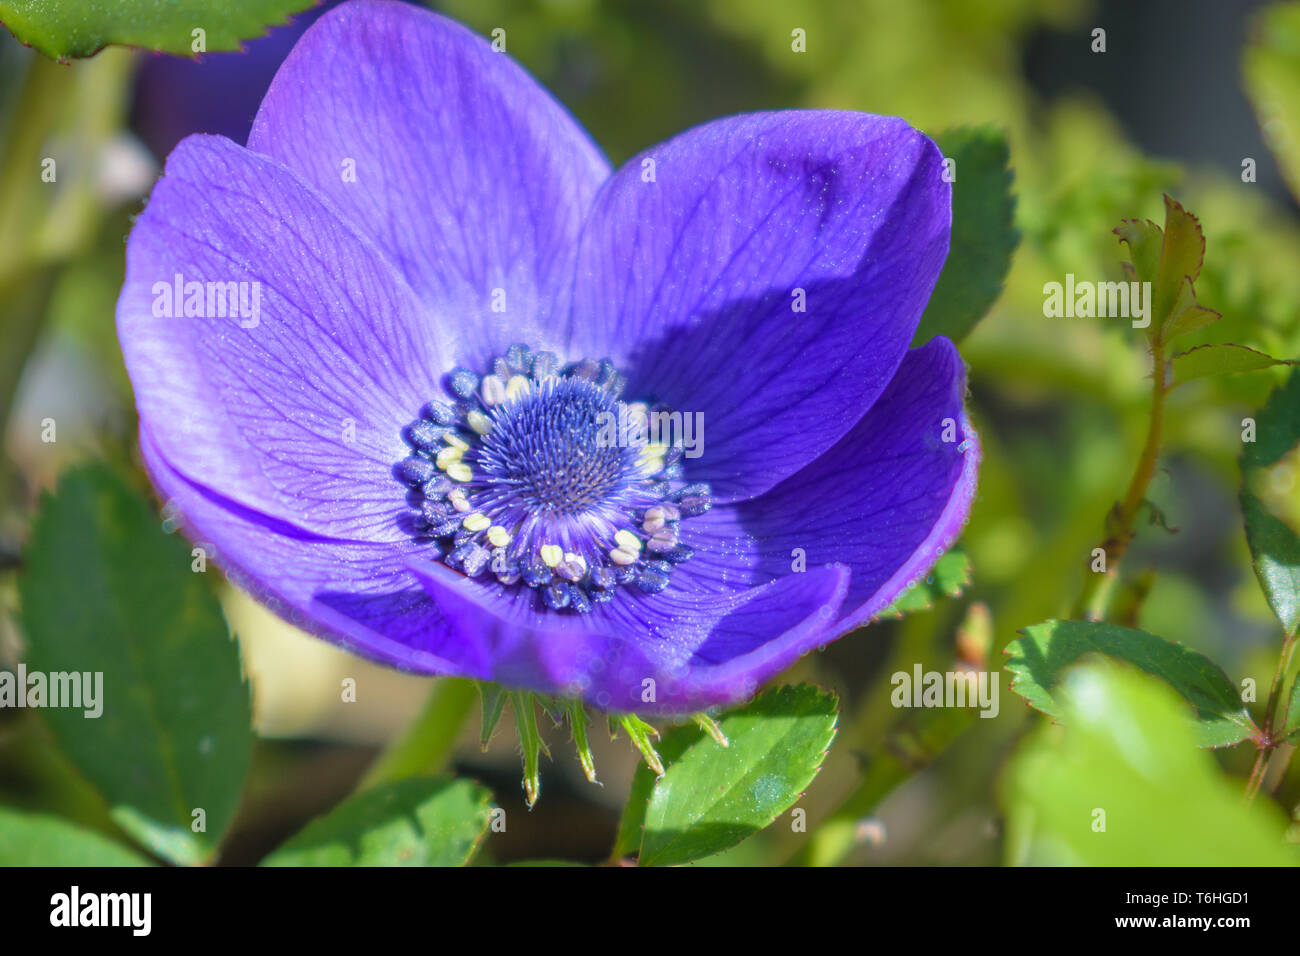 Anemone viola blossom close up, dettaglio Foto Stock